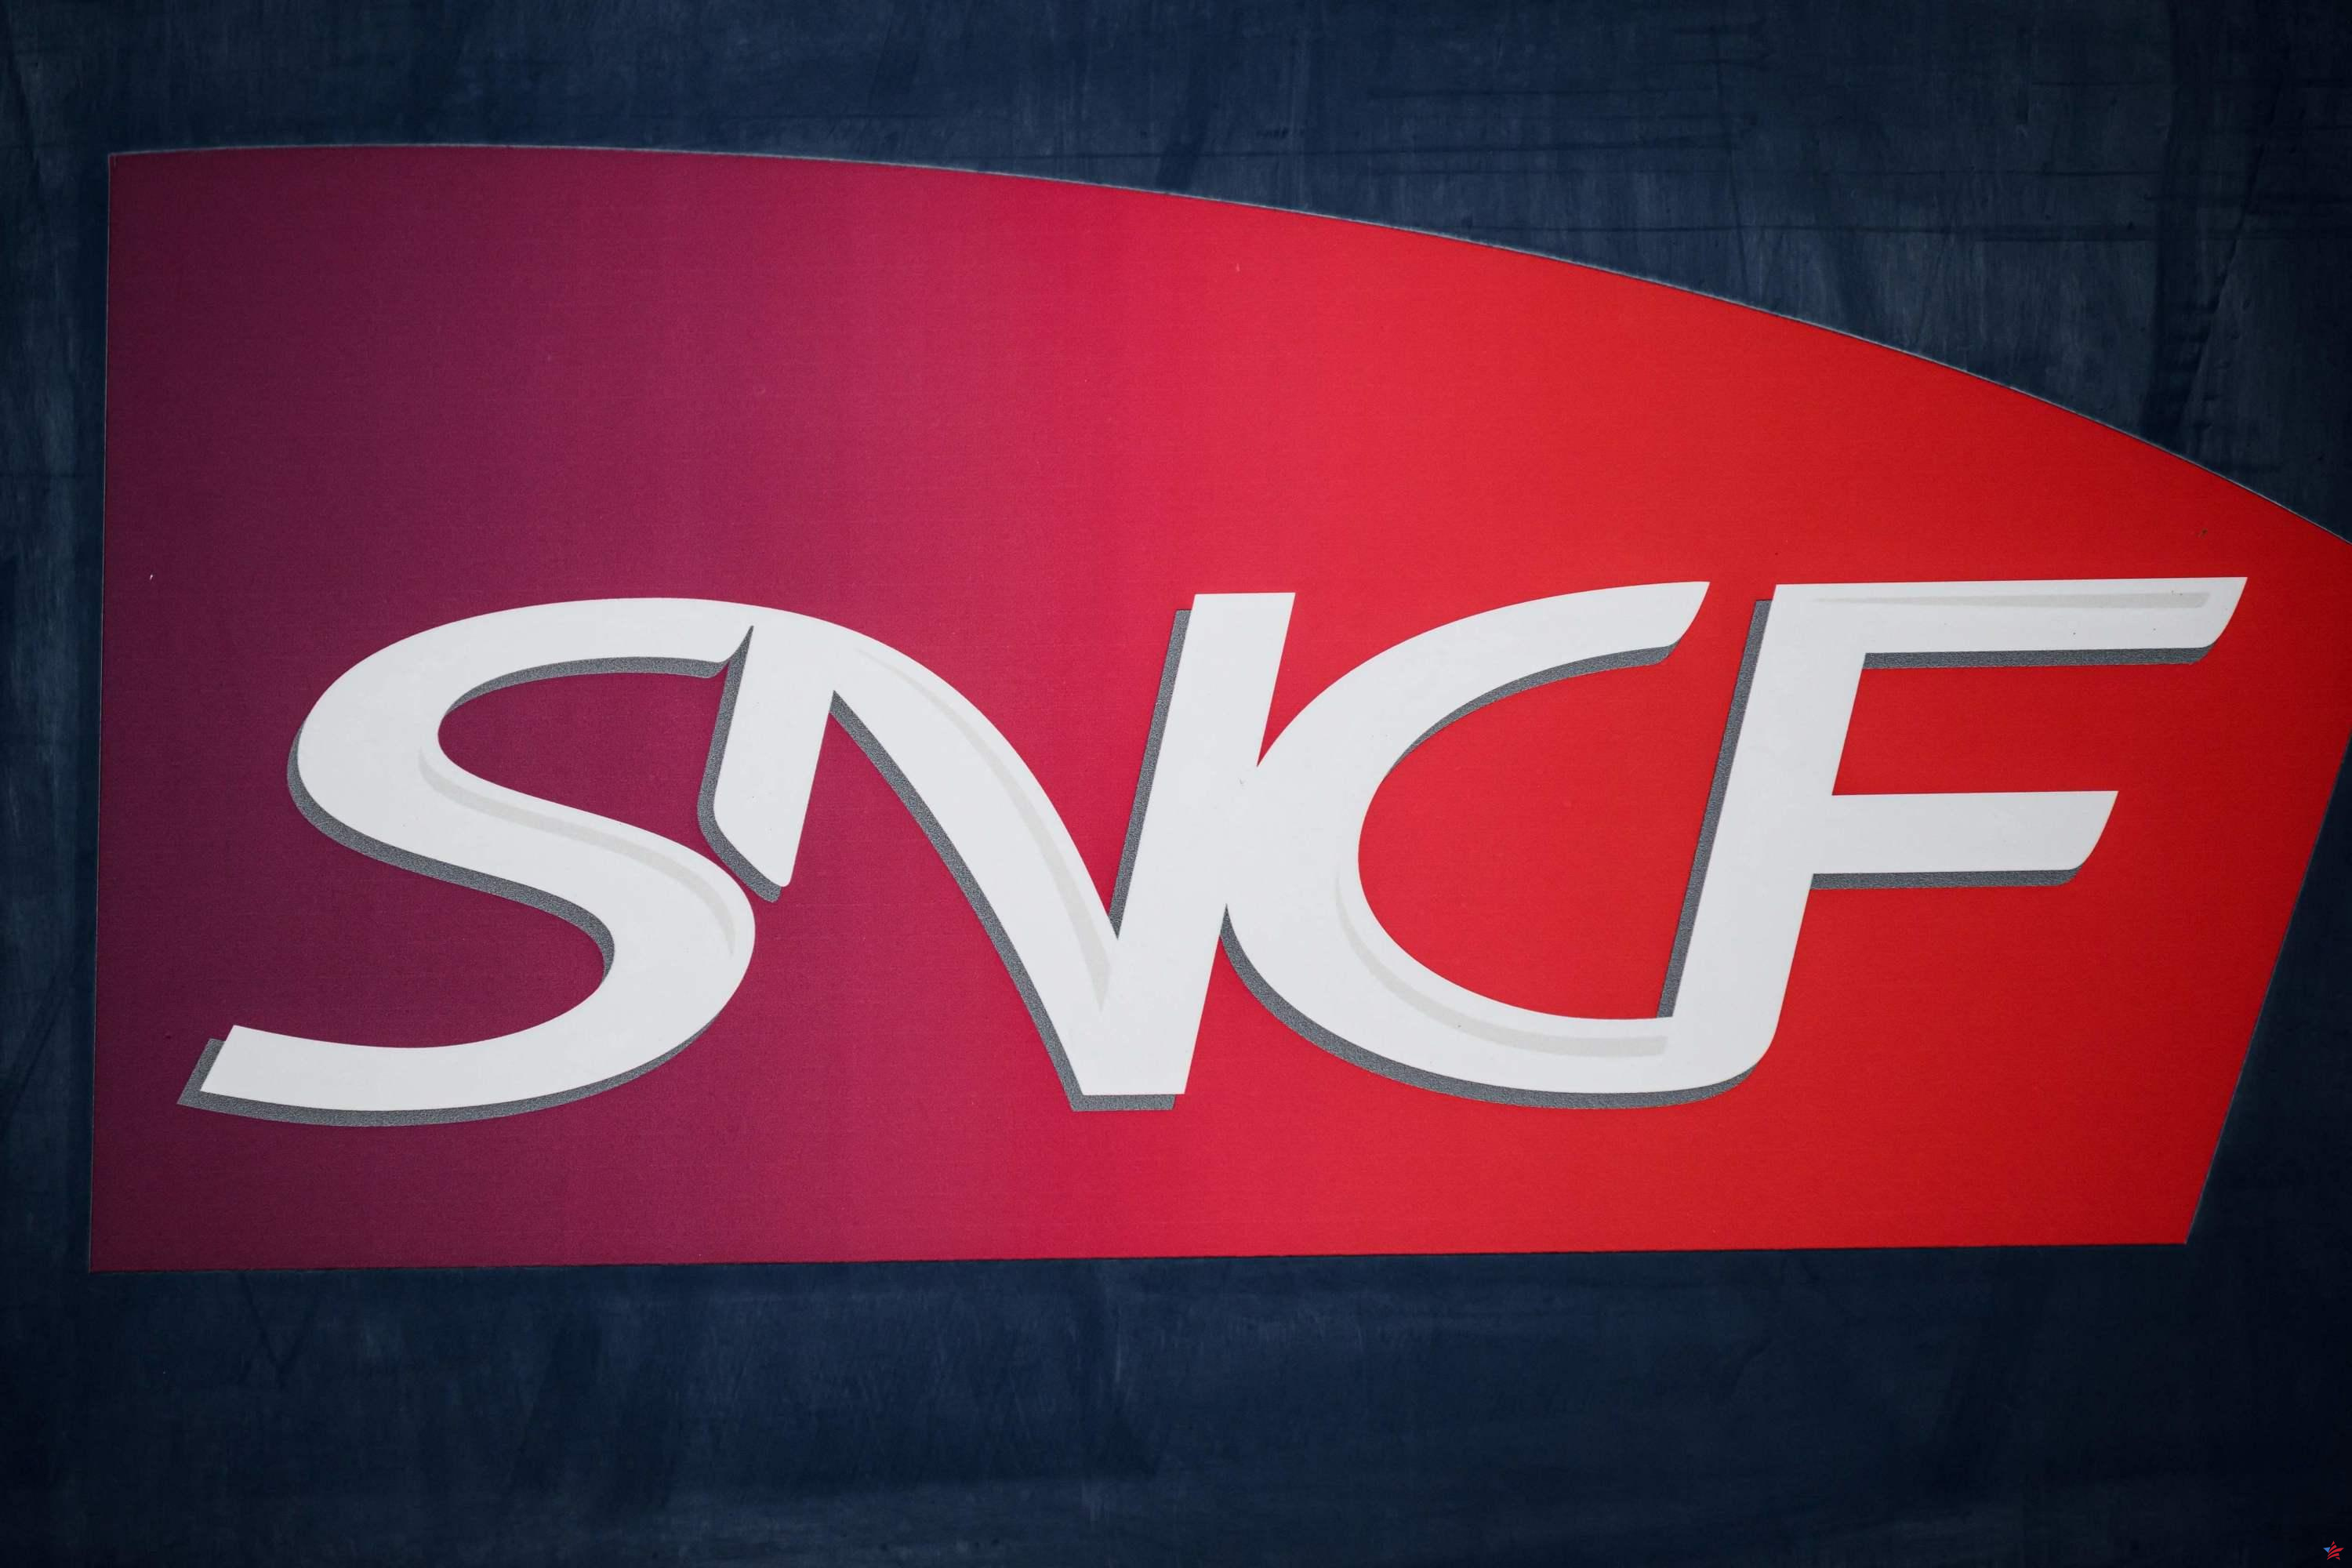 SNCF: los controladores amenazan con hacer huelga el fin de semana del 17 al 18 de febrero